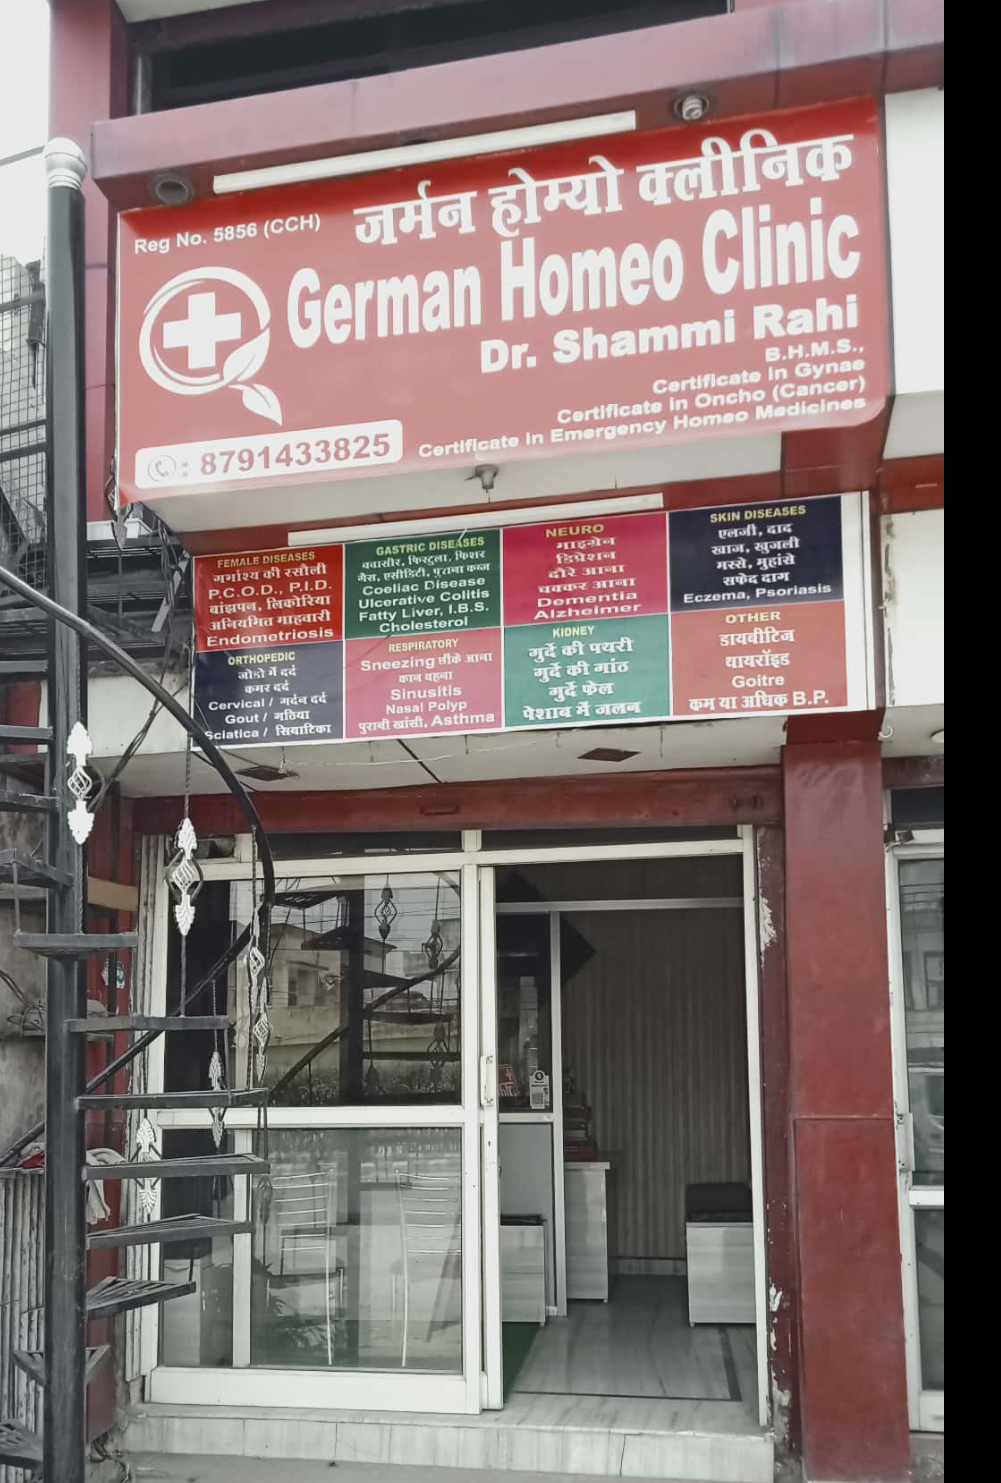 German homeo clinic